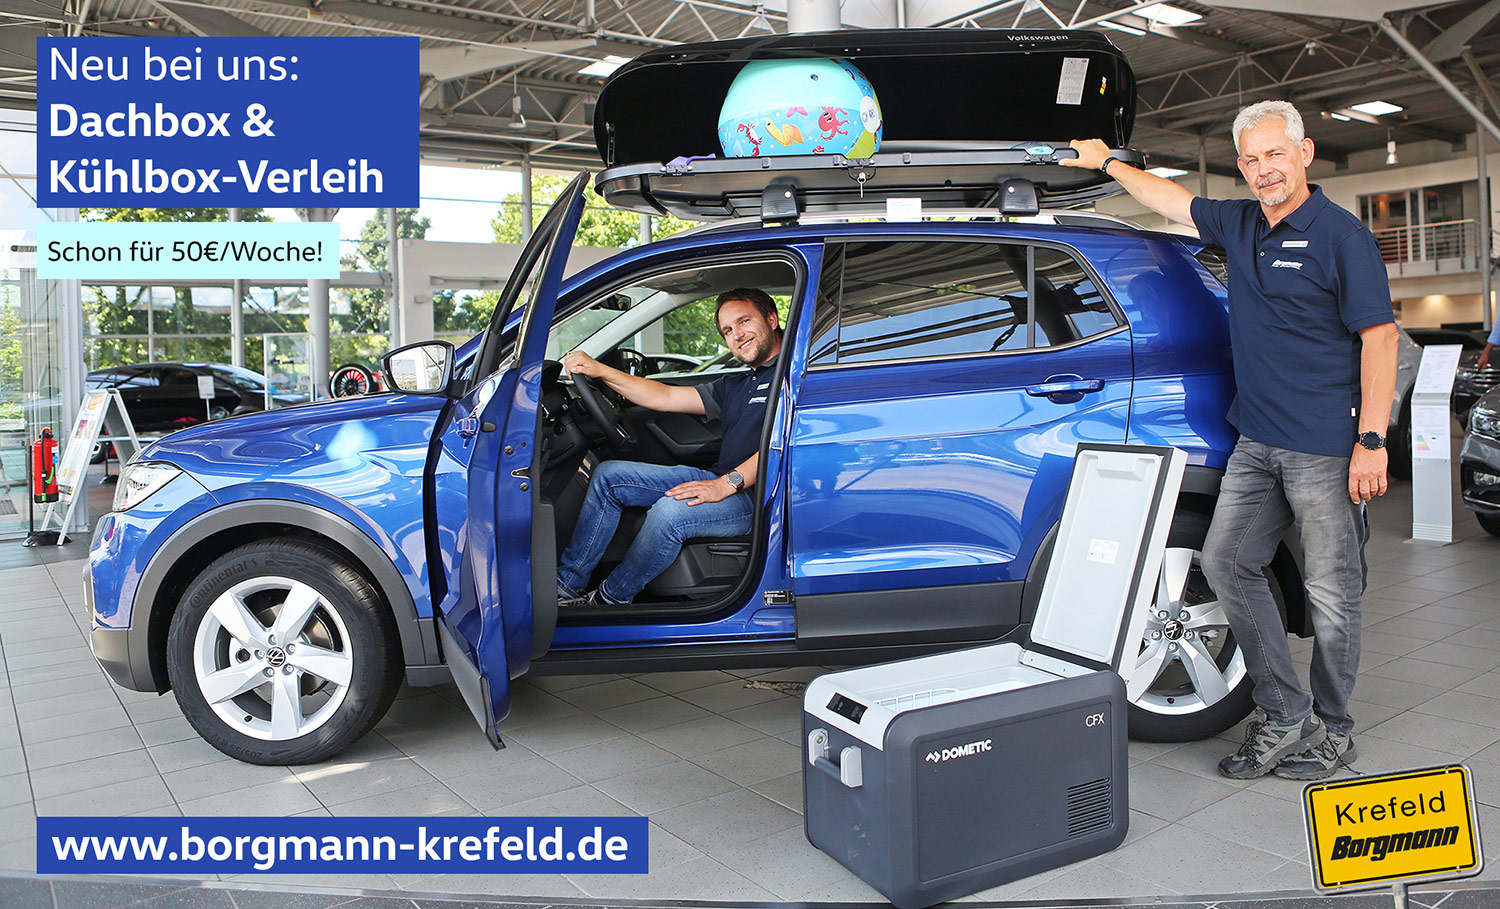 VW Dachbox und Kühlbox Verleih im Autohaus Borgmann